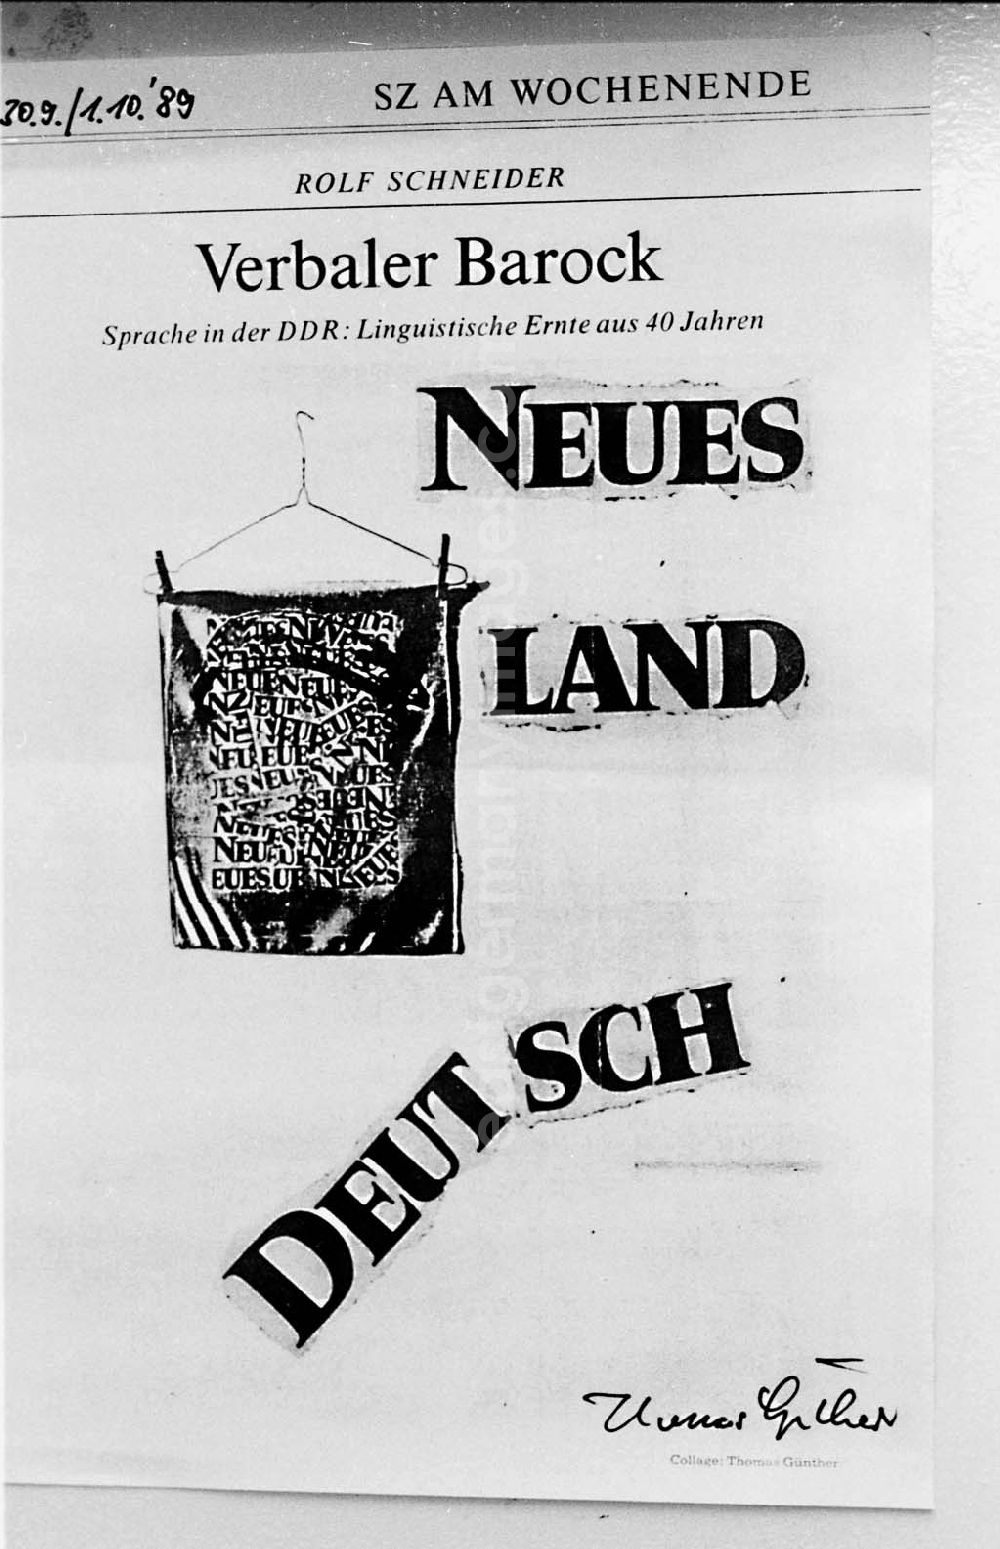 GDR photo archive: Berlin - ND-Collagen in der Galerie Wohnmaschine 5.12.199